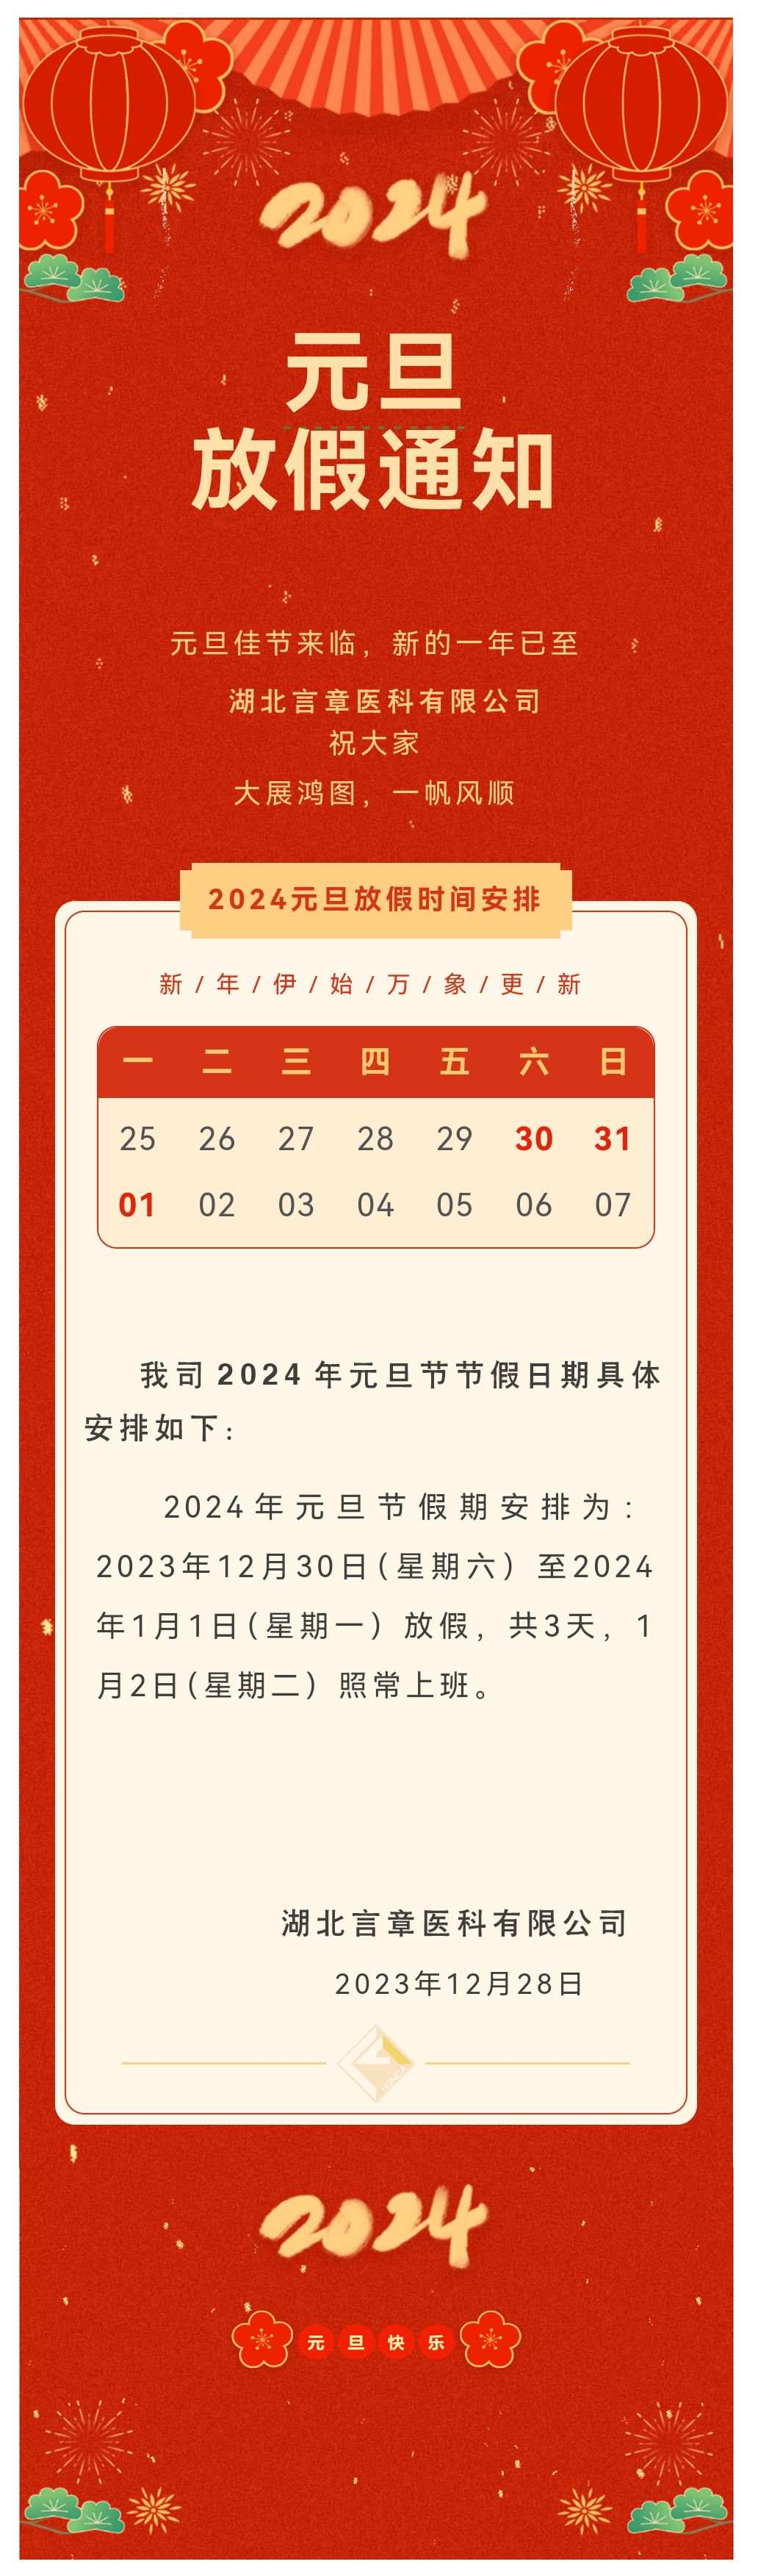 2024 元旦放假通知_compressed.jpg